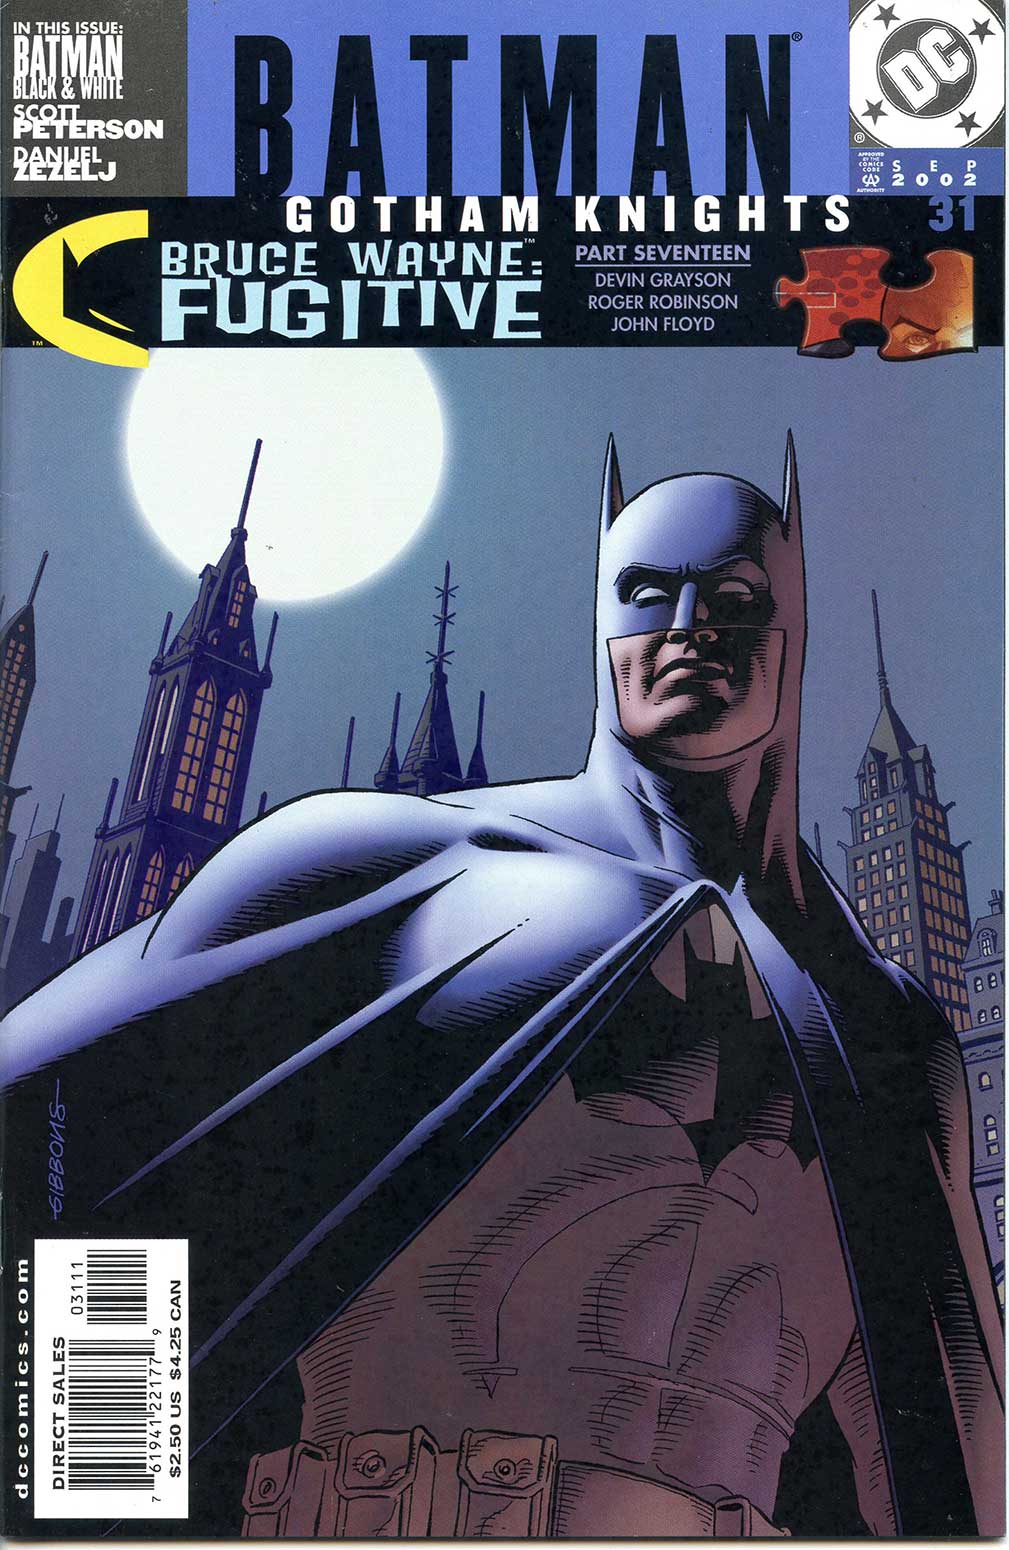 BATMAN GOTHAM KNIGHTS #1 NEAR MINT 2000 DC COMICS 